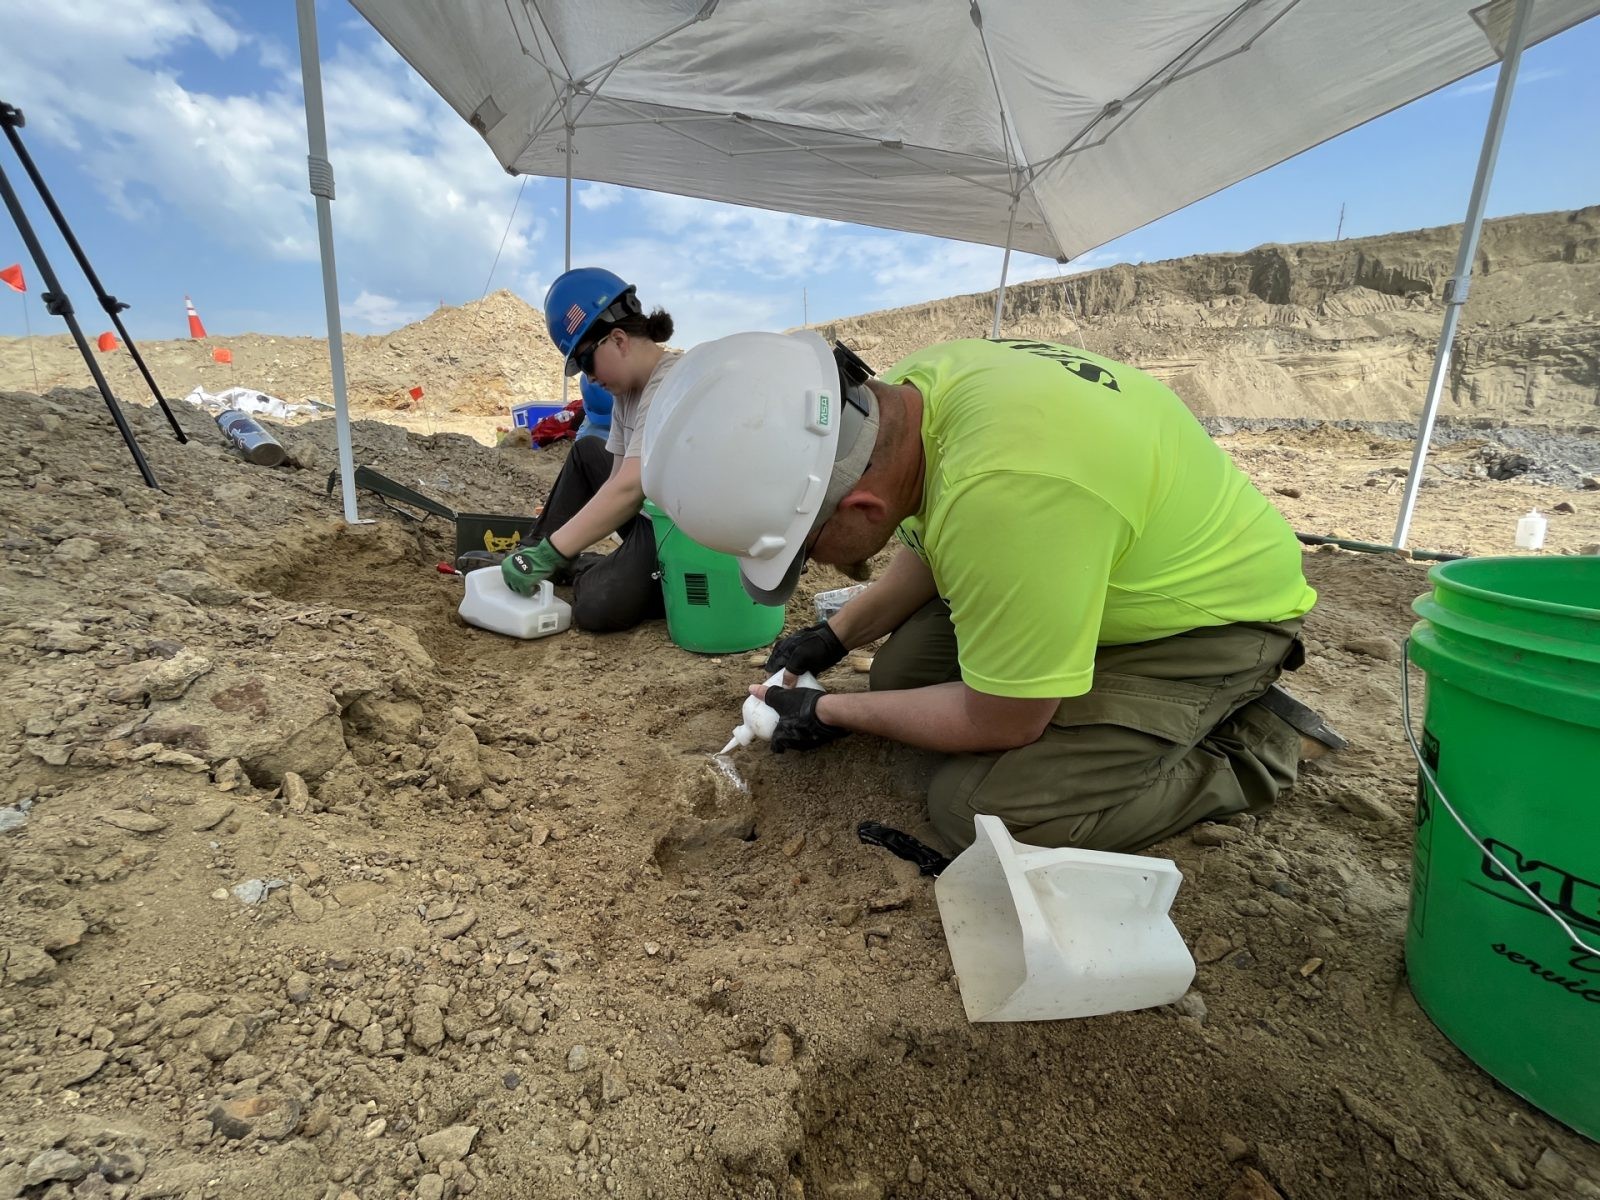 Badania paleontologów, którzy wydobyli kieł mamuta / źródło: North Dakota Geological Survey, materiały prasowe
